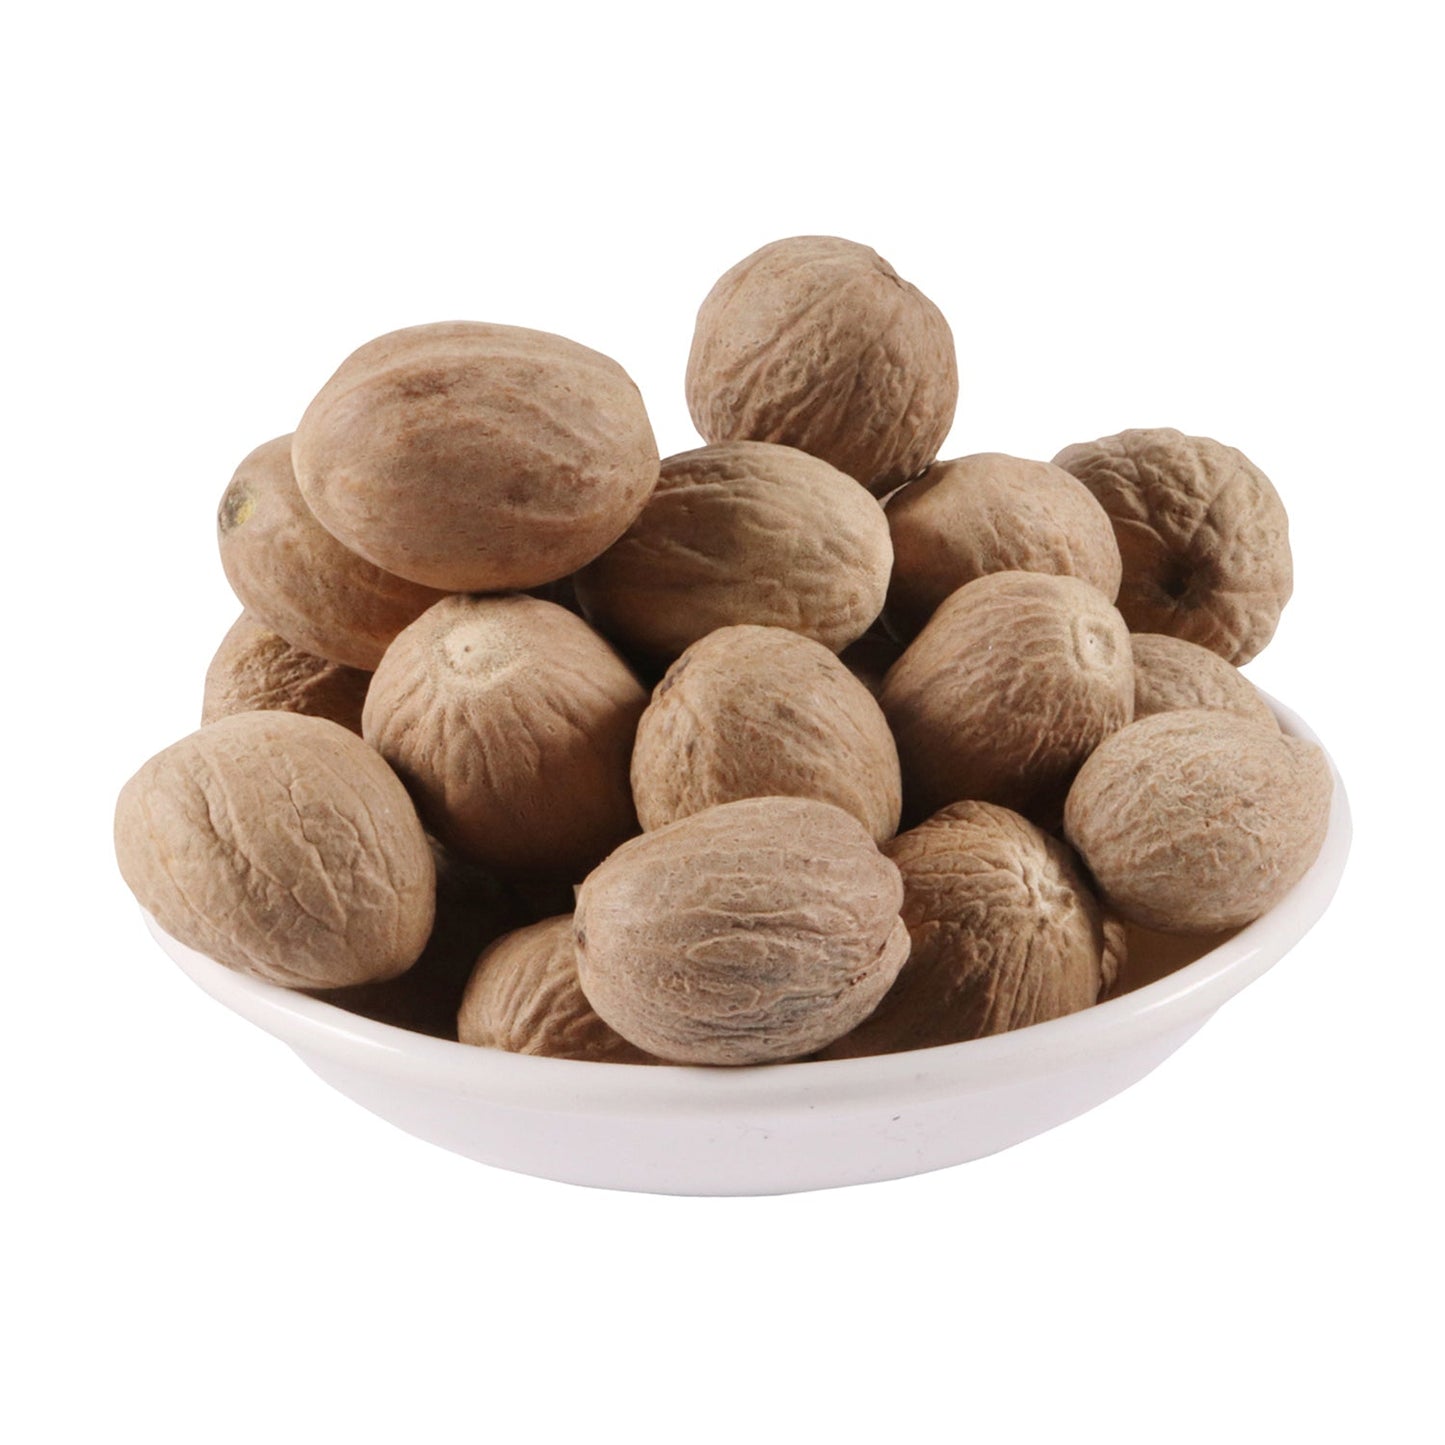 Jaiphal Asli - Jathikai - Myristica fragrans - Nutmeg (50 Grams)